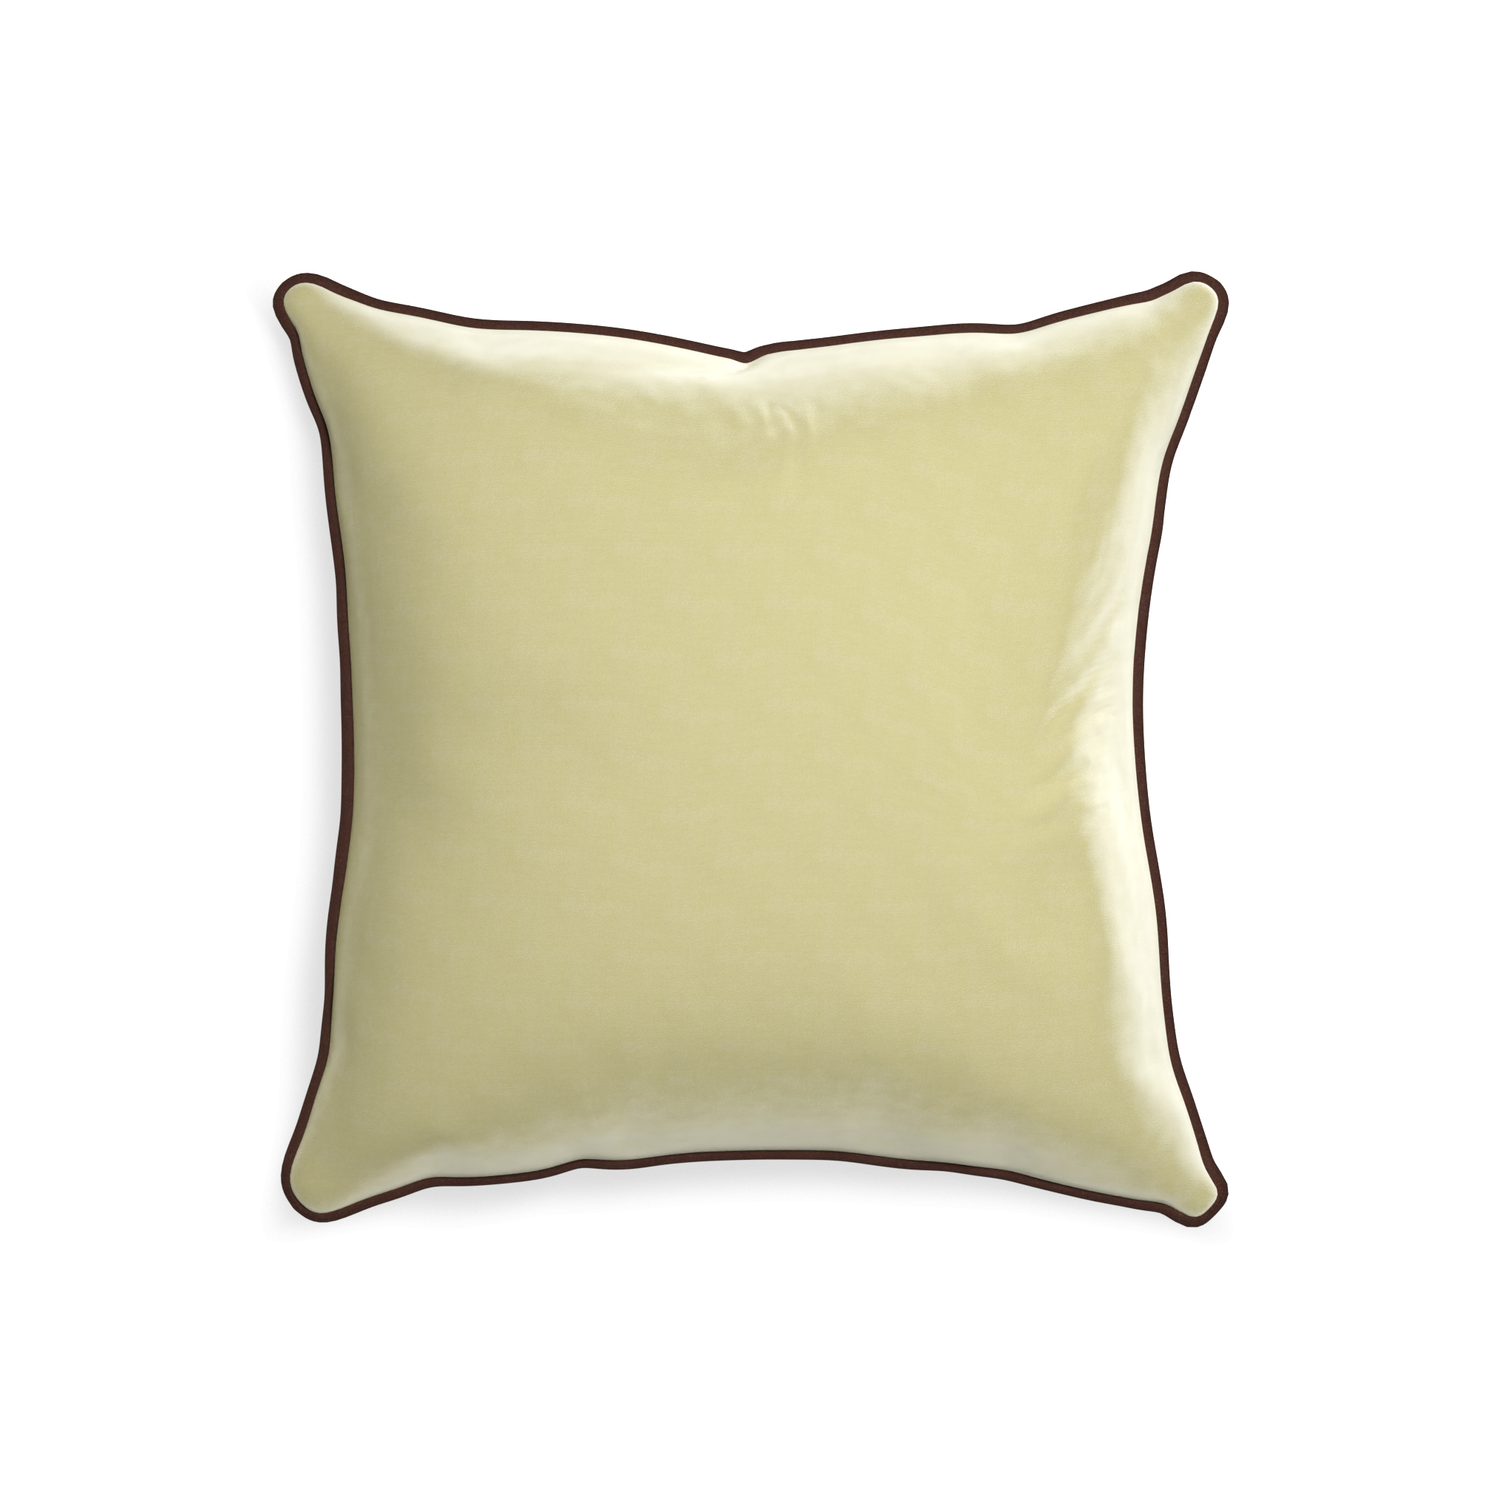 square light green velvet pillow with brown velvet piping